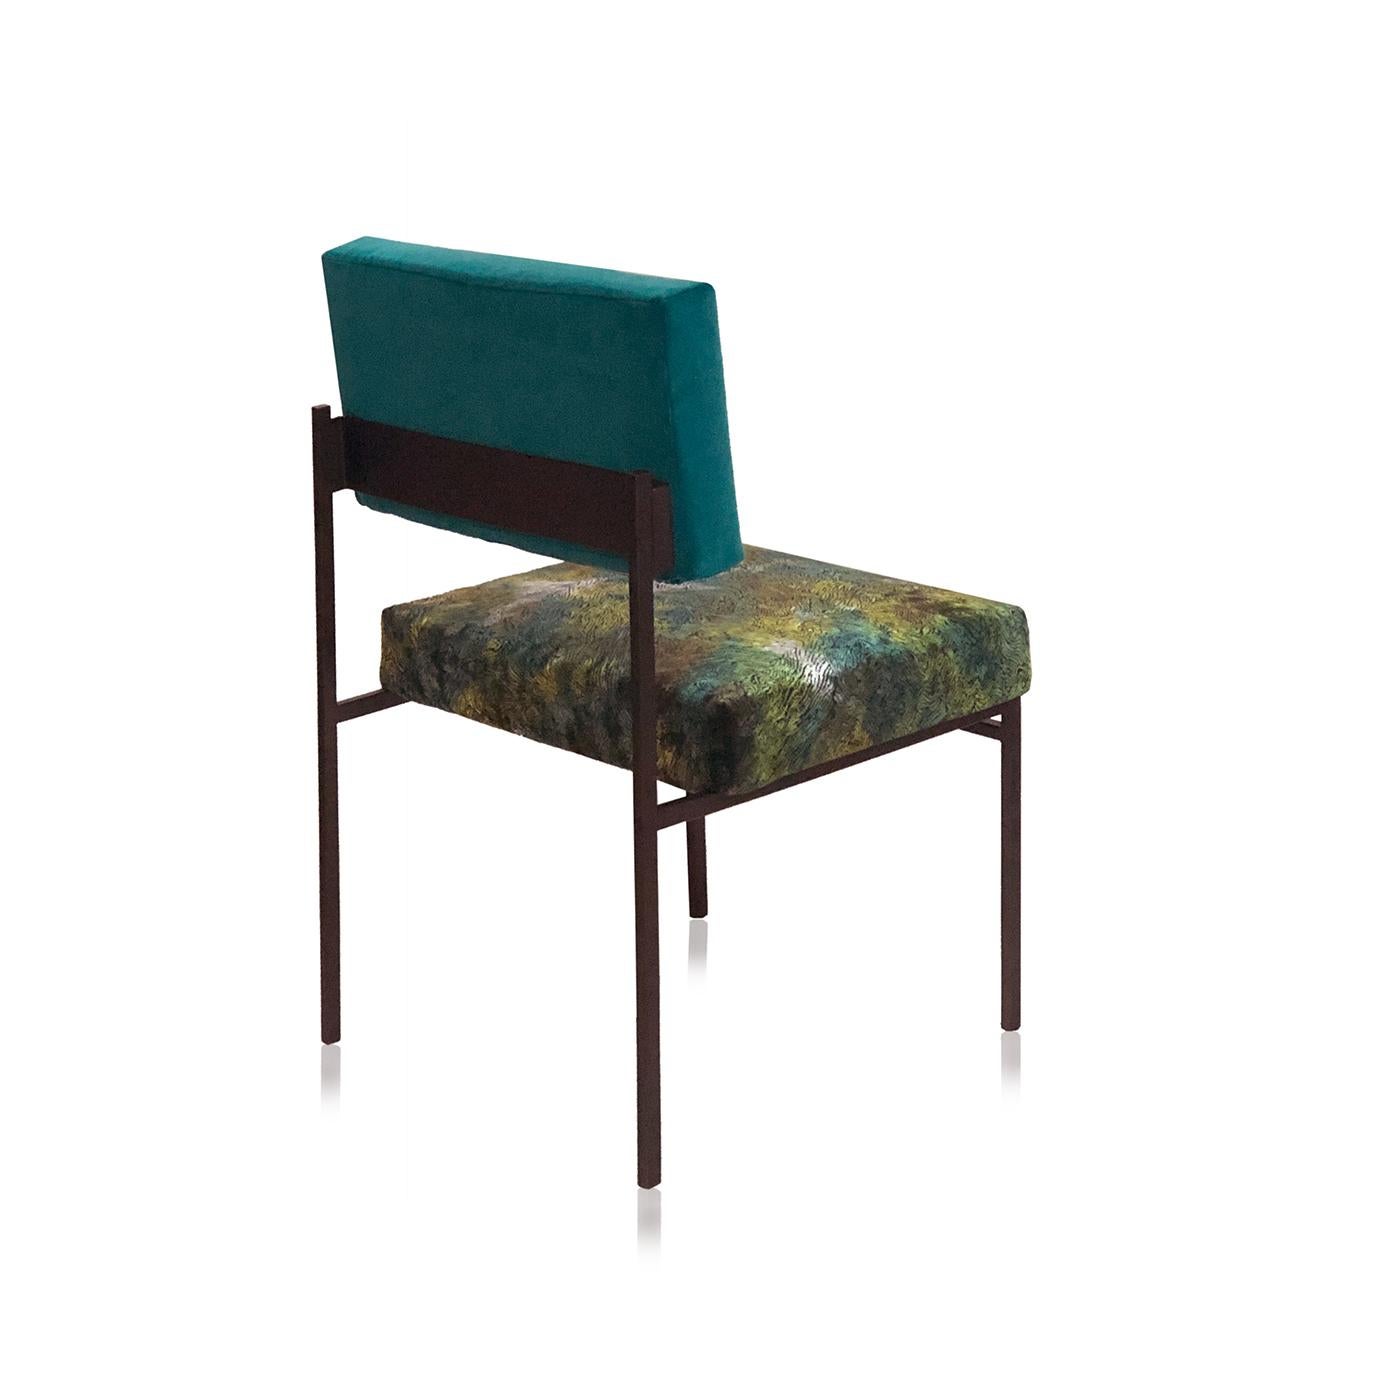 Parfaite pour se détendre lors d'une grande conversation, la chaise en velours vert Aurea de CtrlZak et Davide Barzaghi est le summum du confort. Avec son aspect rétro des années 50, cet article très prisé des restaurants et des hôtels est conçu